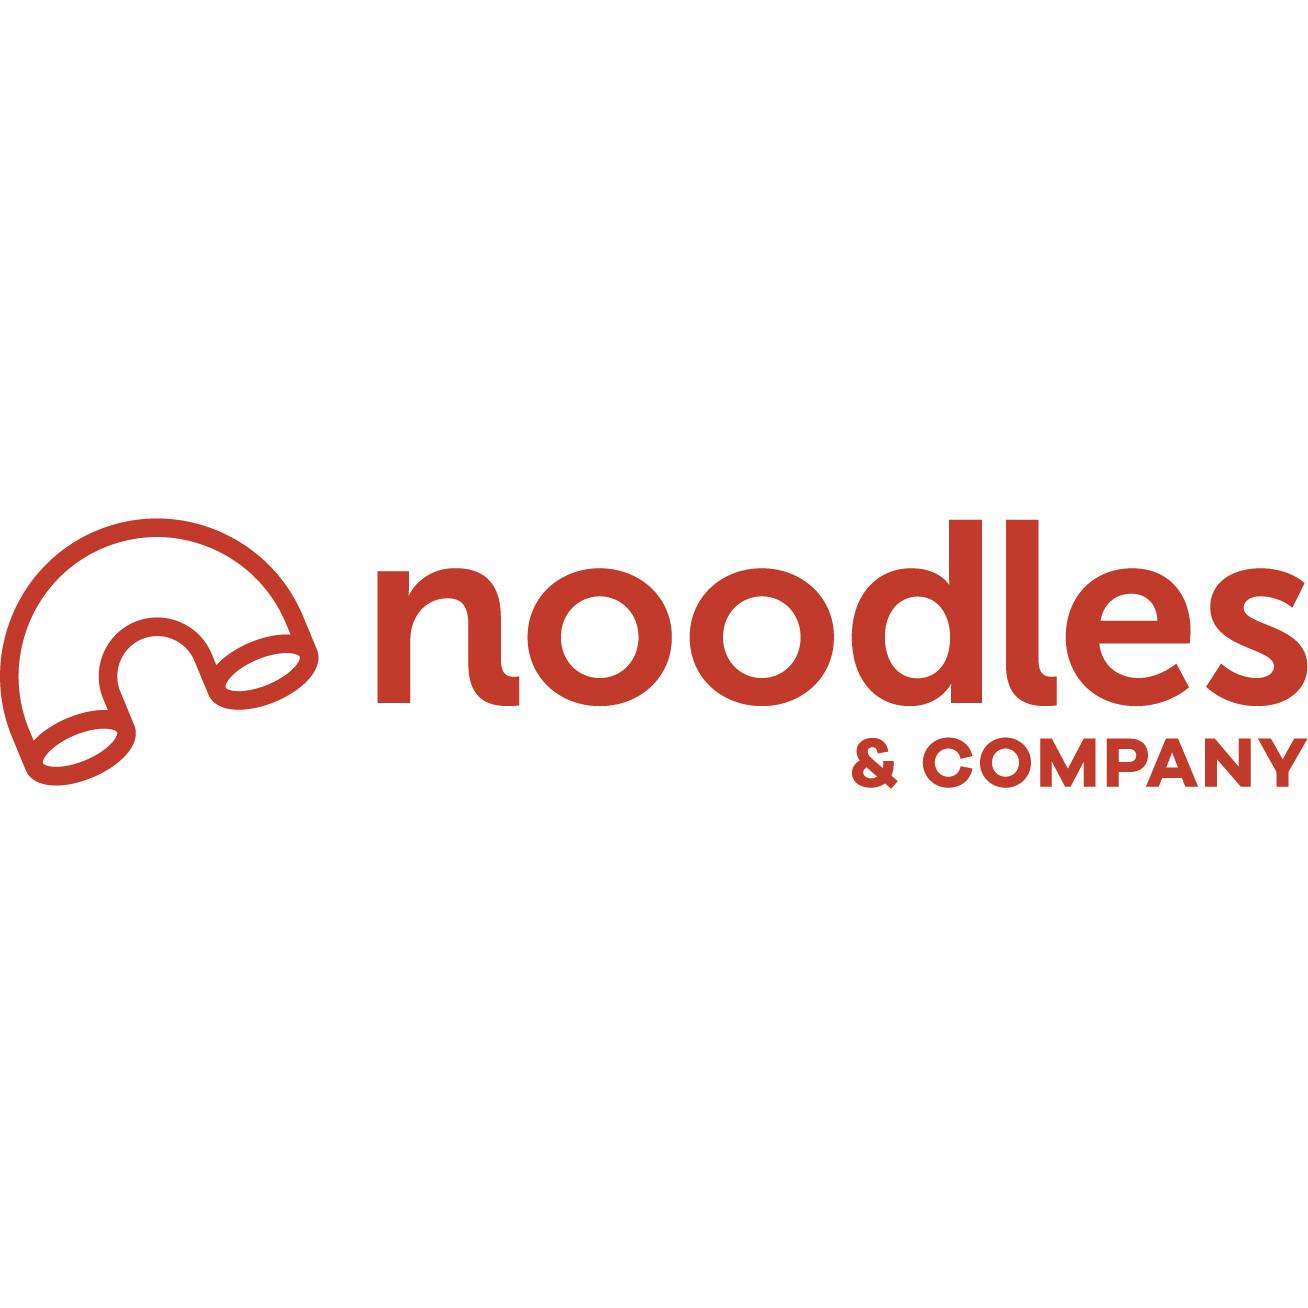 Noodles & Company - Eau Claire Menu and Delivery in Eau Claire WI, 54701